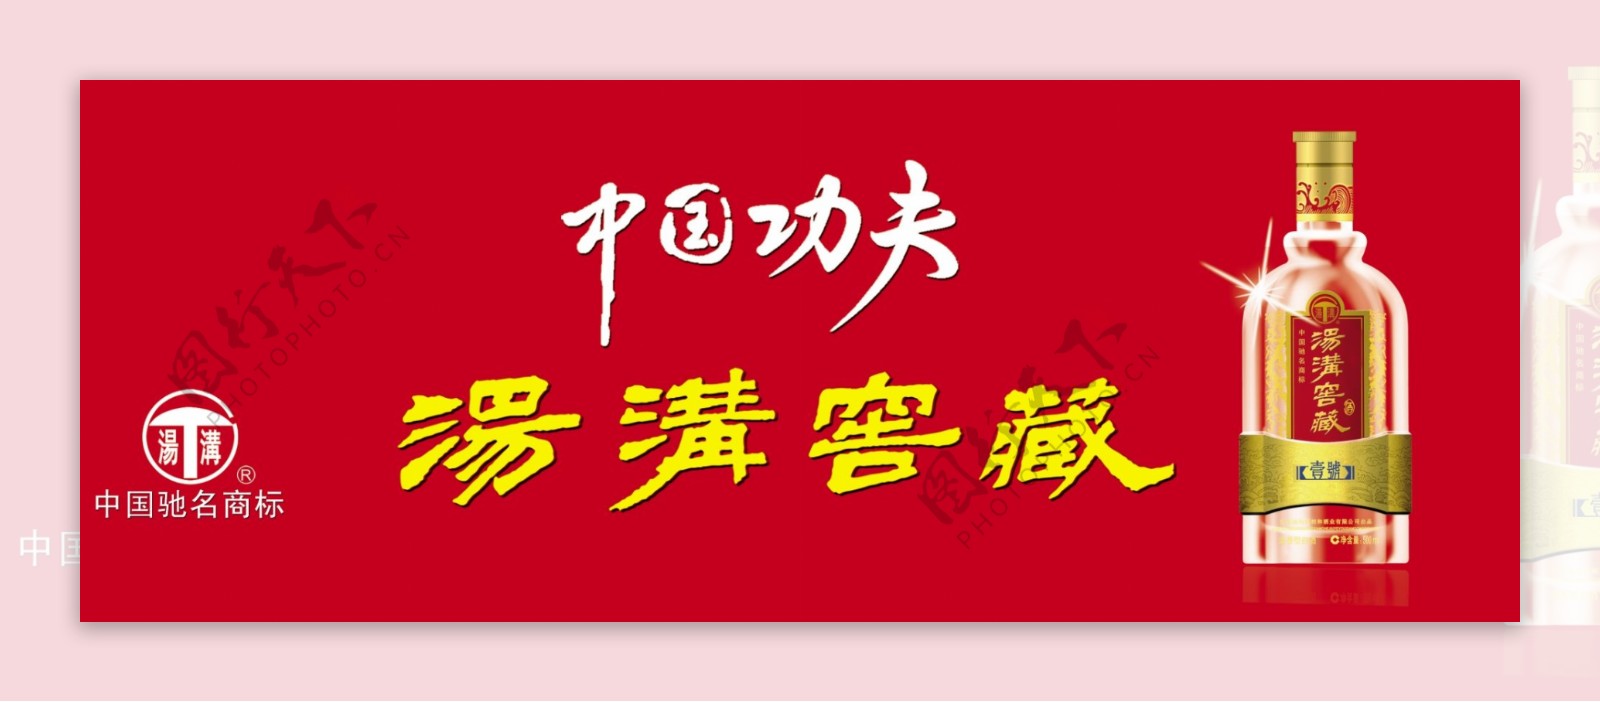 汤沟窖藏2012夏季新品广告图片